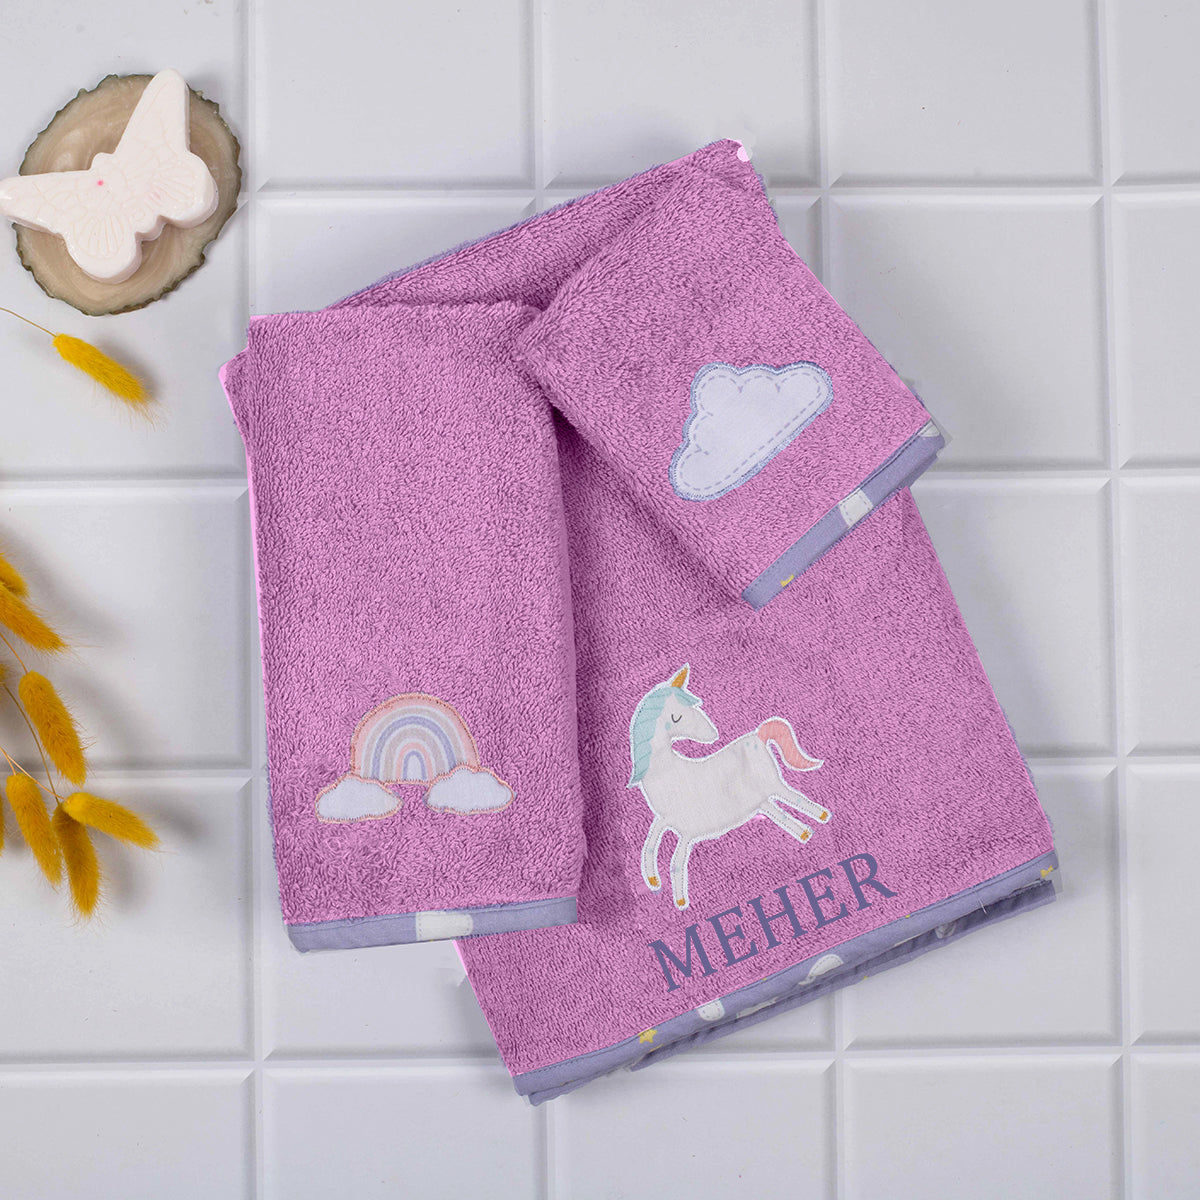 Tiny Snooze Kids Towel Set of 3- Pink